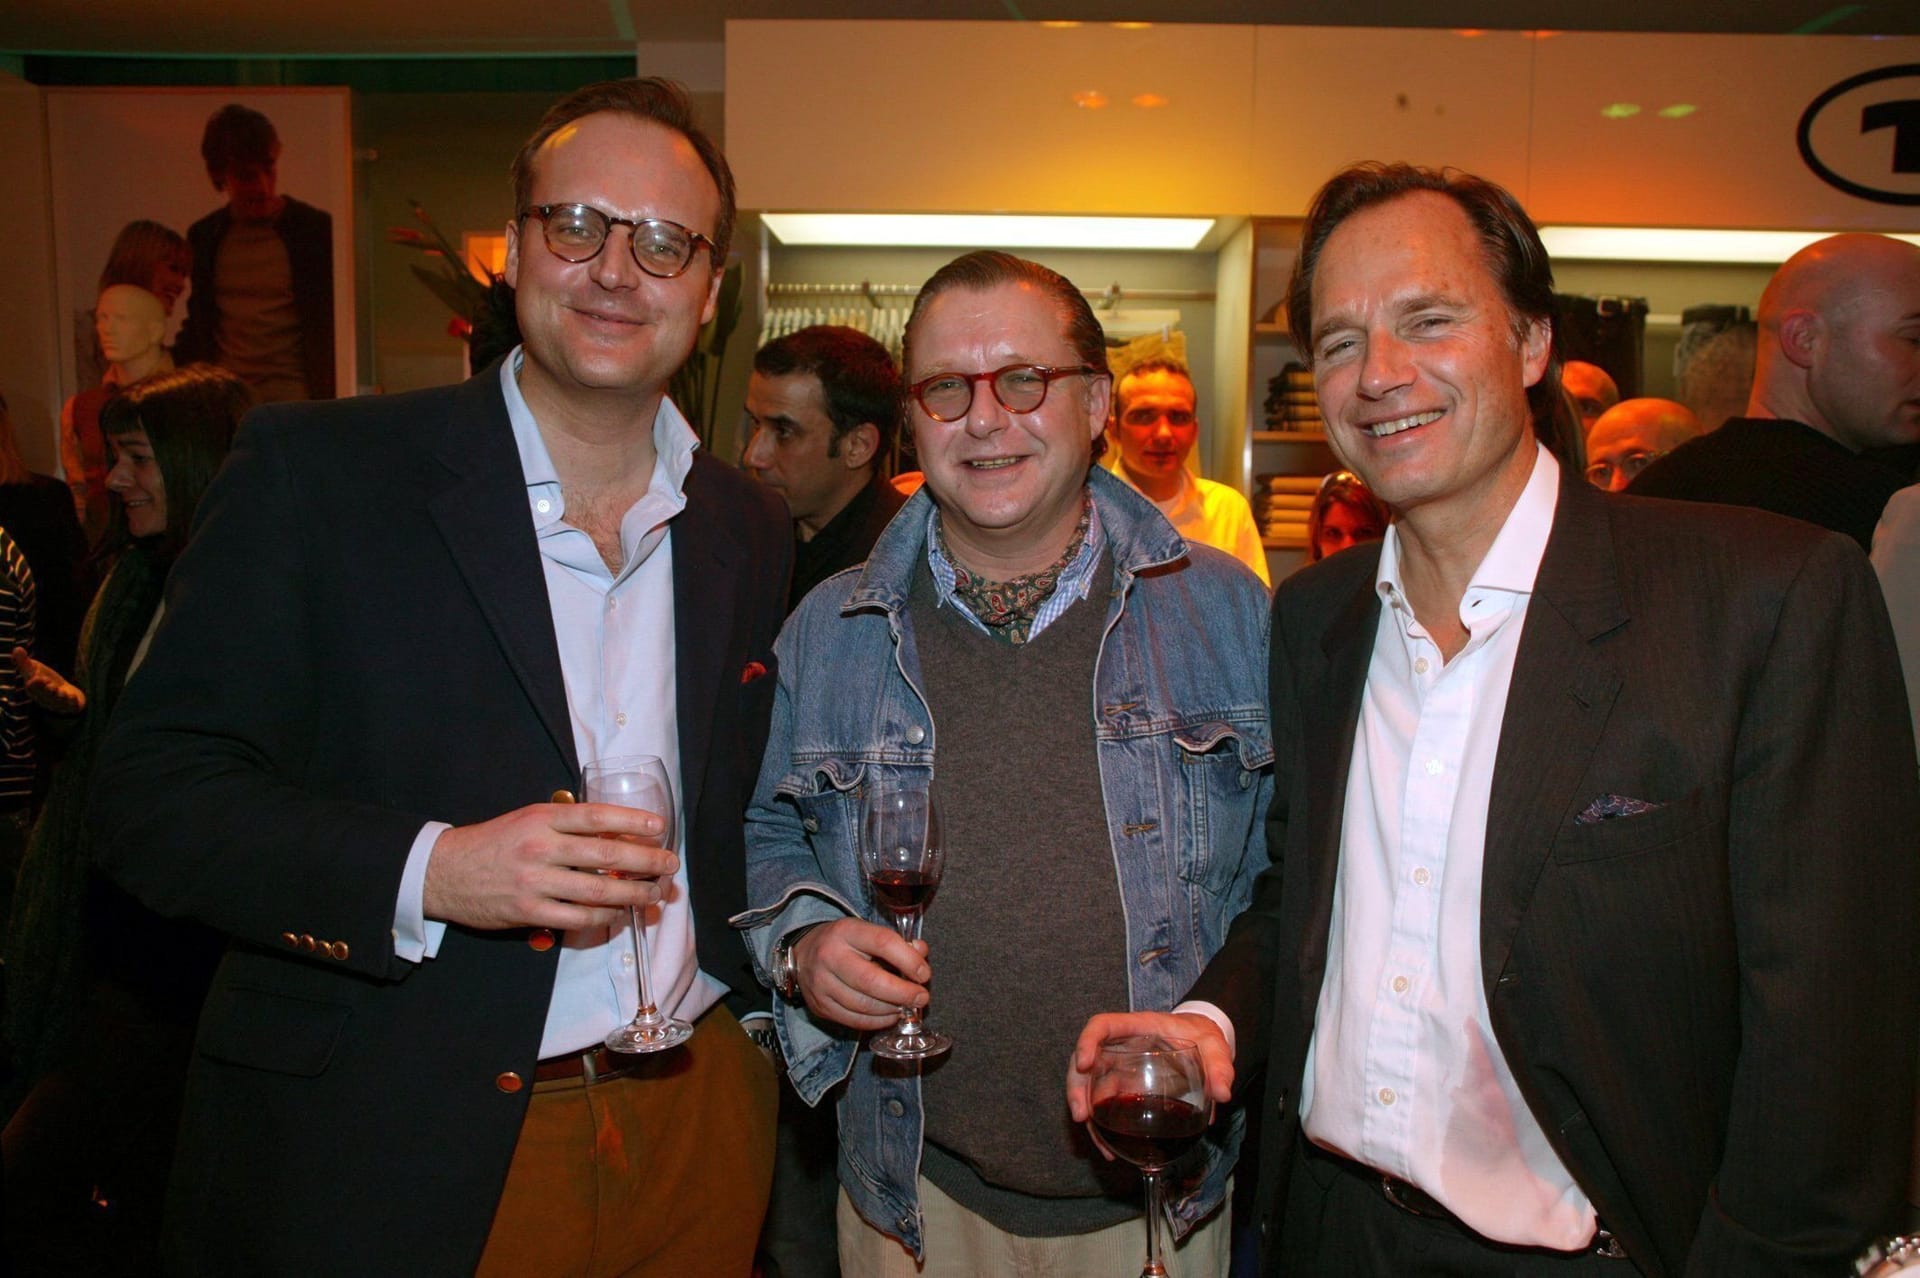 Die Brüder te Neues (von links): Verleger Sebastian te Neues, Schauspieler Frank te Neues und Hendrik te Neues. Das Foto stammt aus dem Jahr 2003.